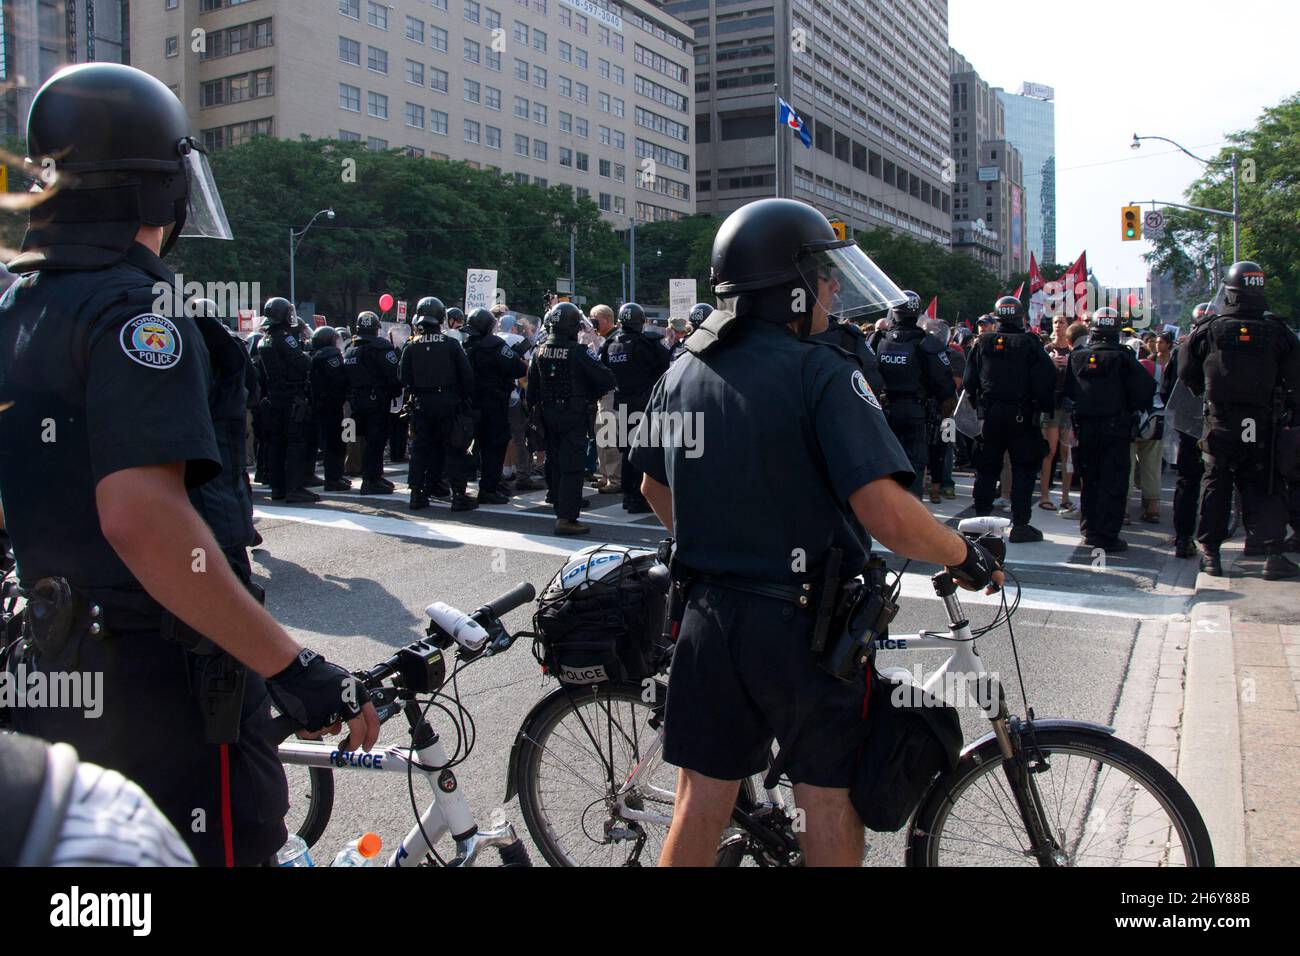 Toronto, Ontario, Kanada - 06/25/2010 : die Polizei von Riot ist voll im Gang, um Tausende von Aktivisten zu kontrollieren, die in einem Protest vor der Universität entlang marschieren Stockfoto